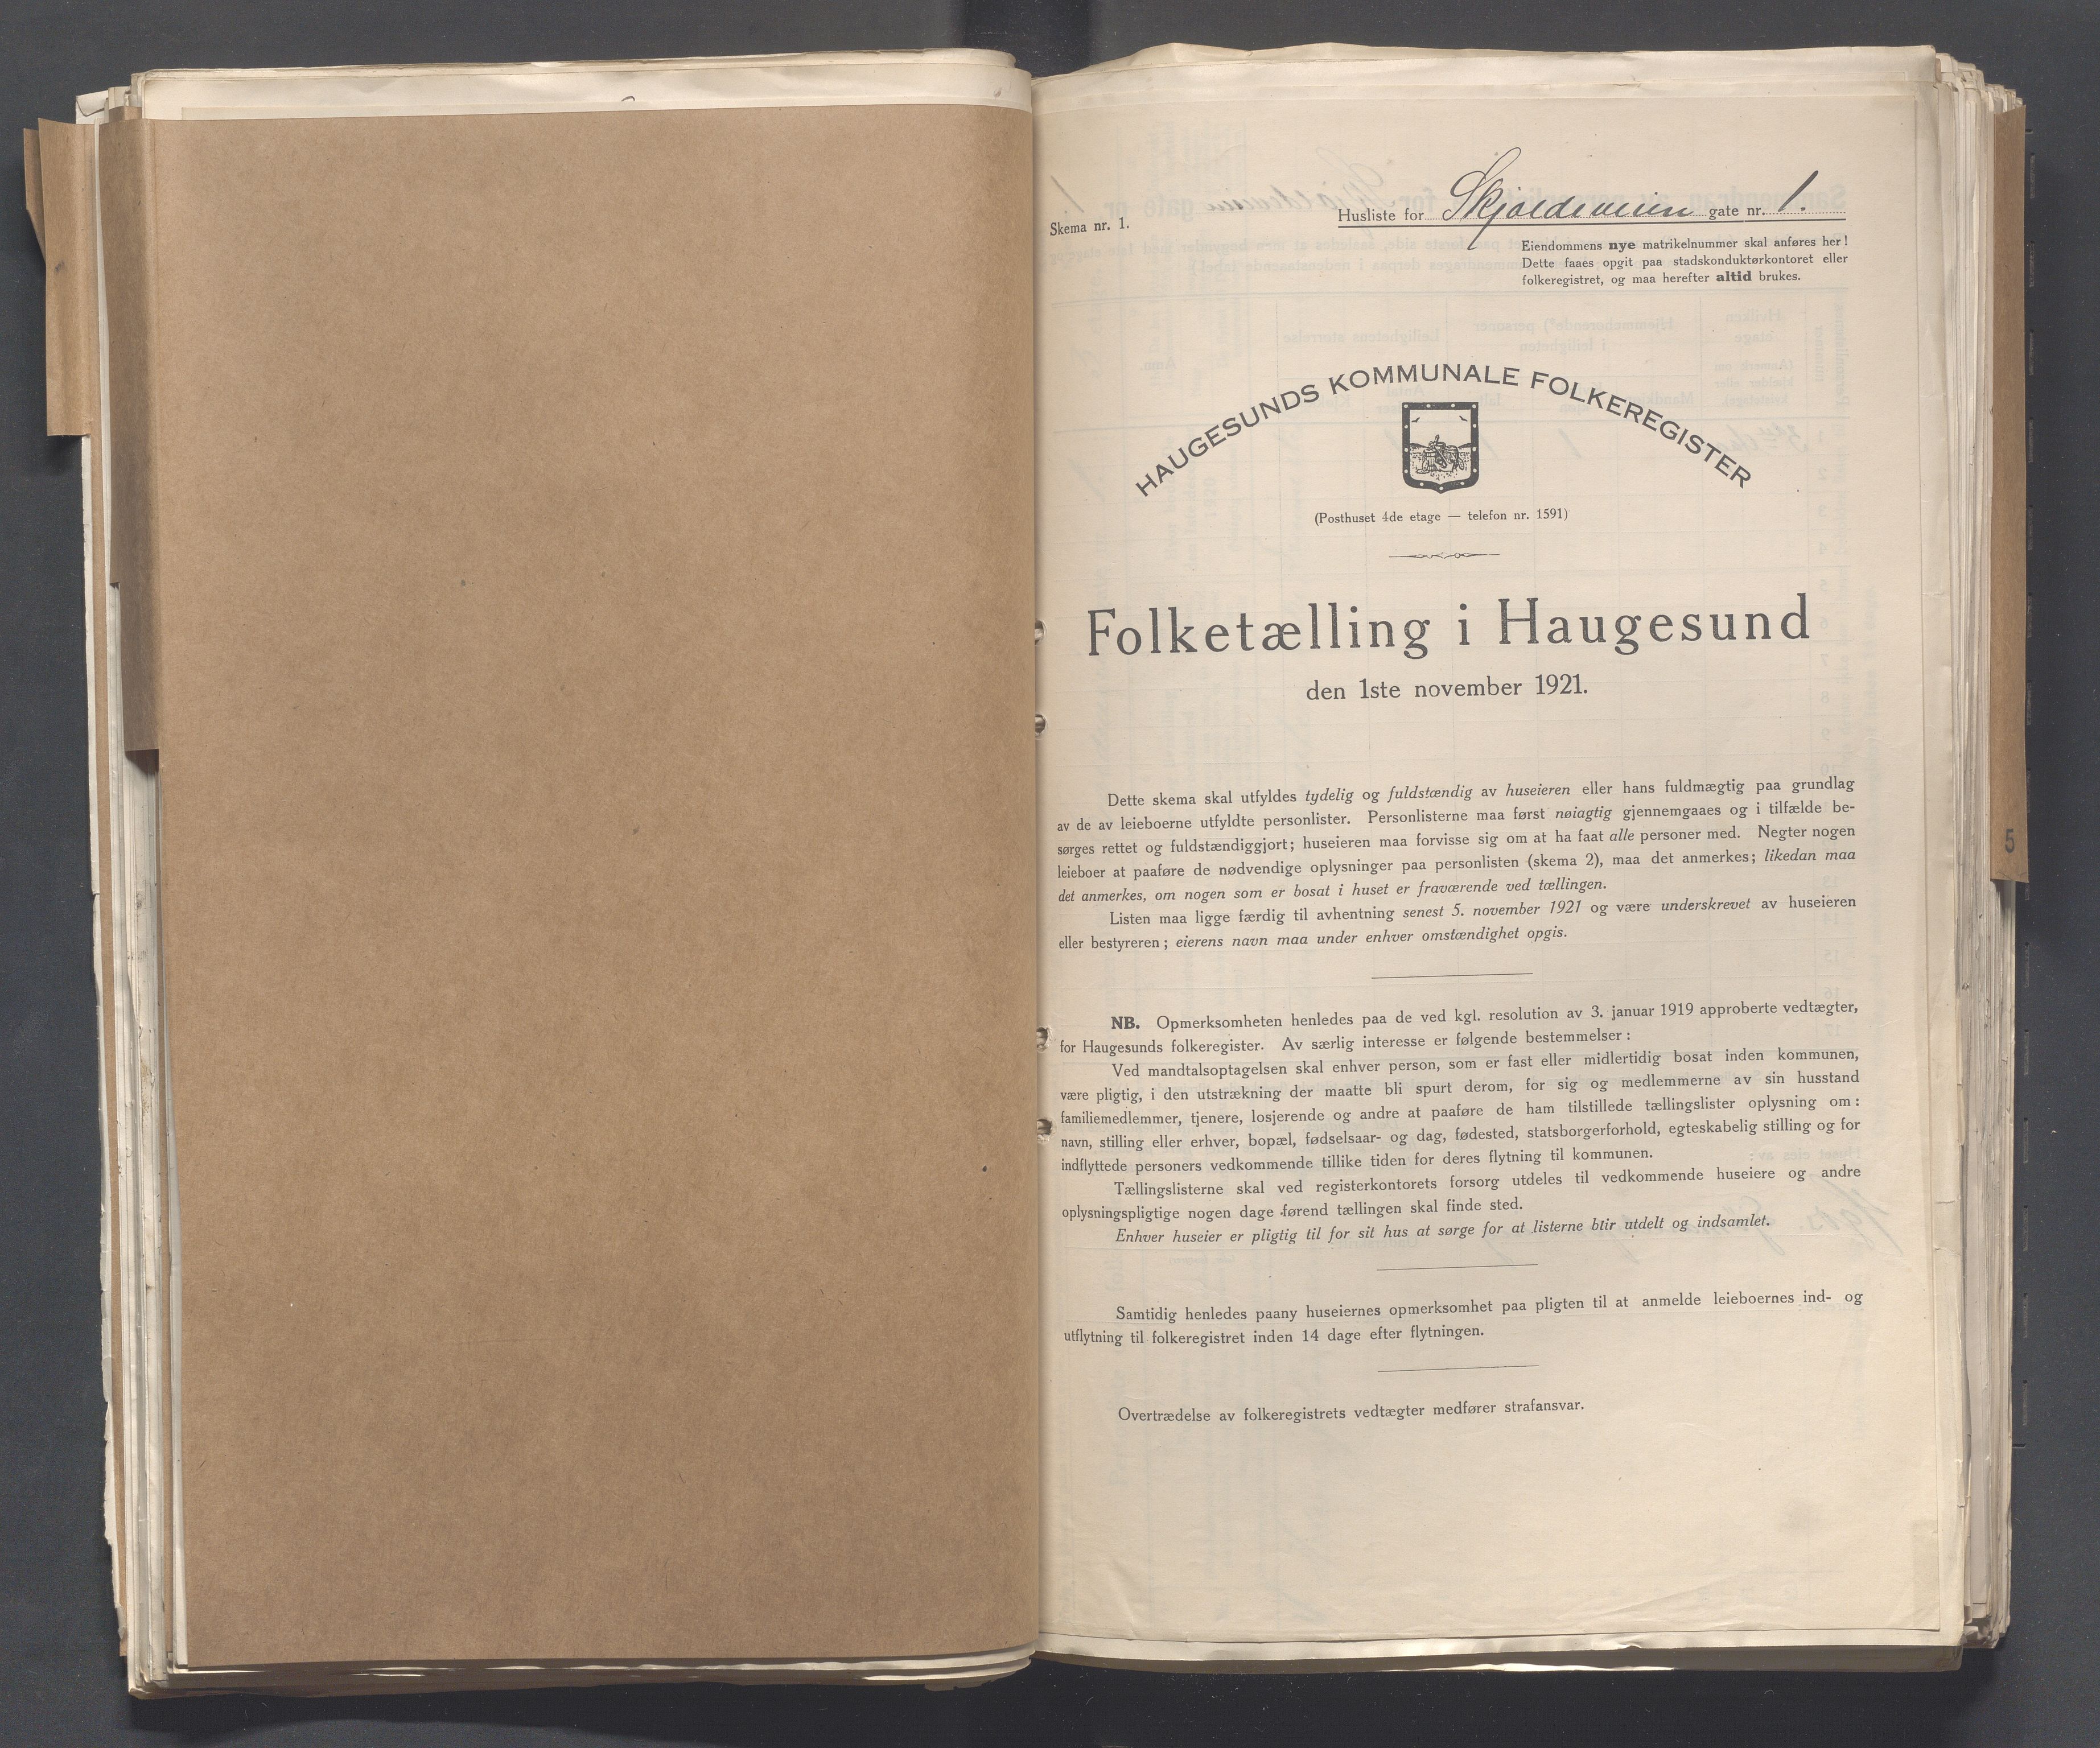 IKAR, Local census 1.11.1921 for Haugesund, 1921, p. 3987